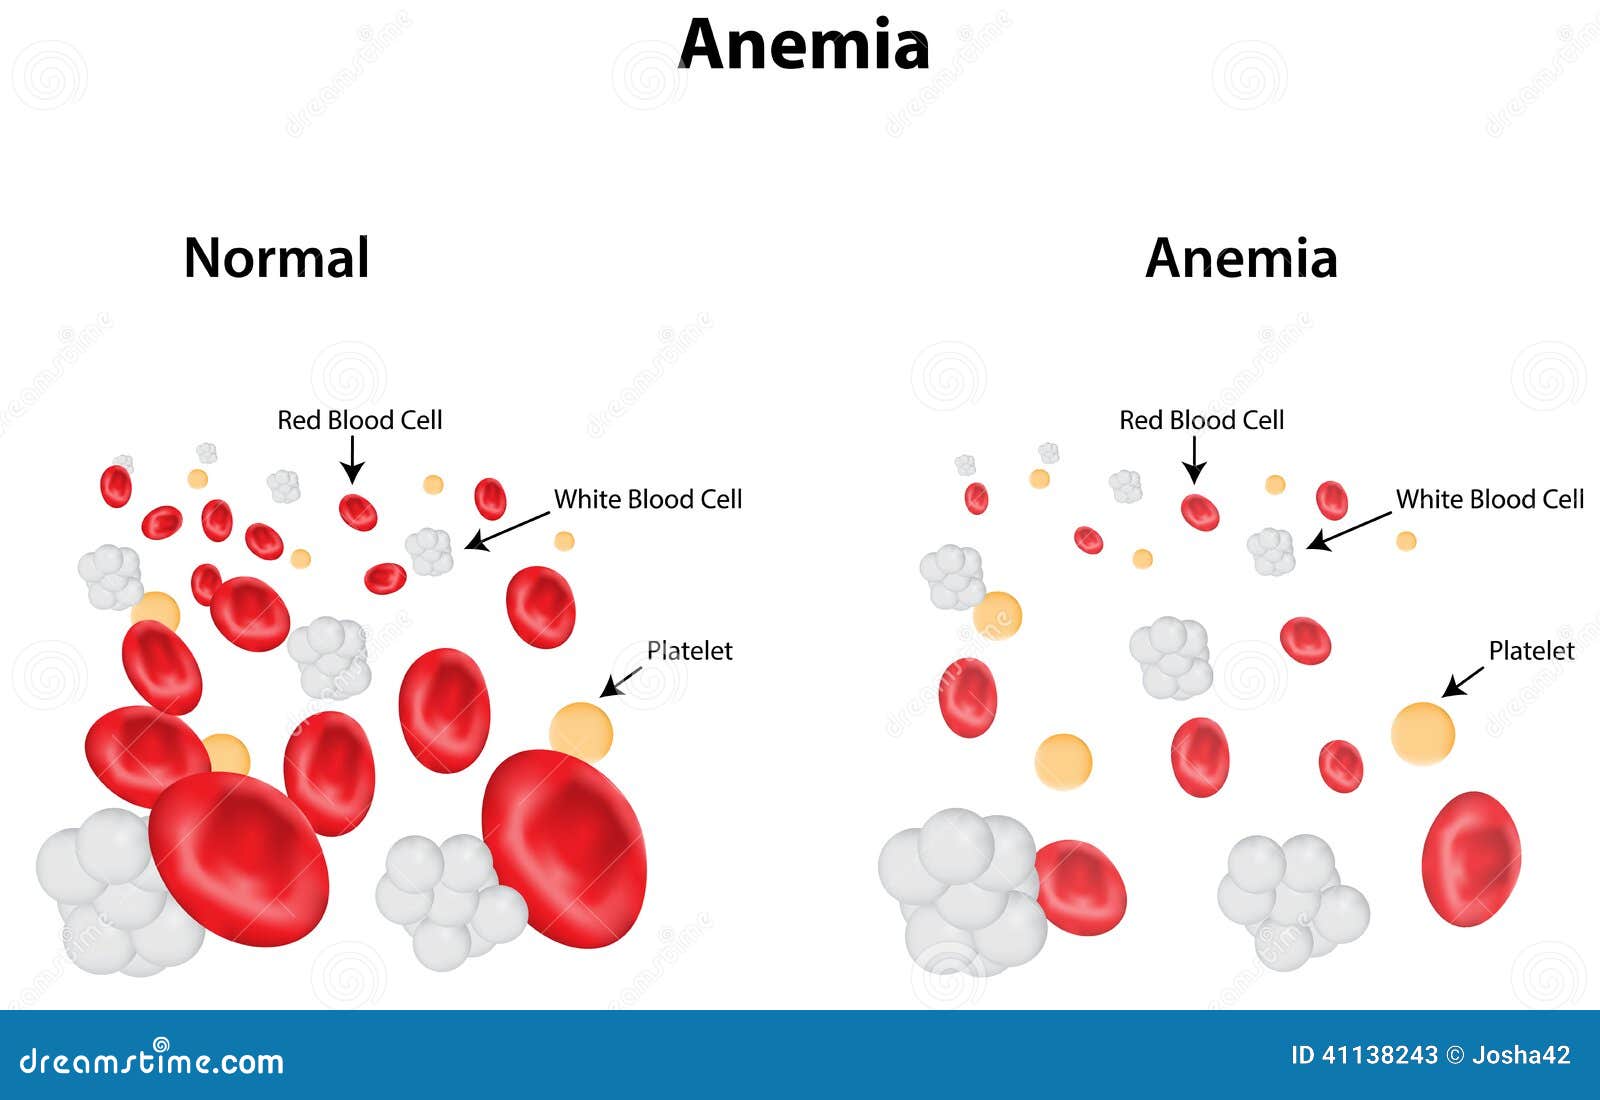 anemia diagram